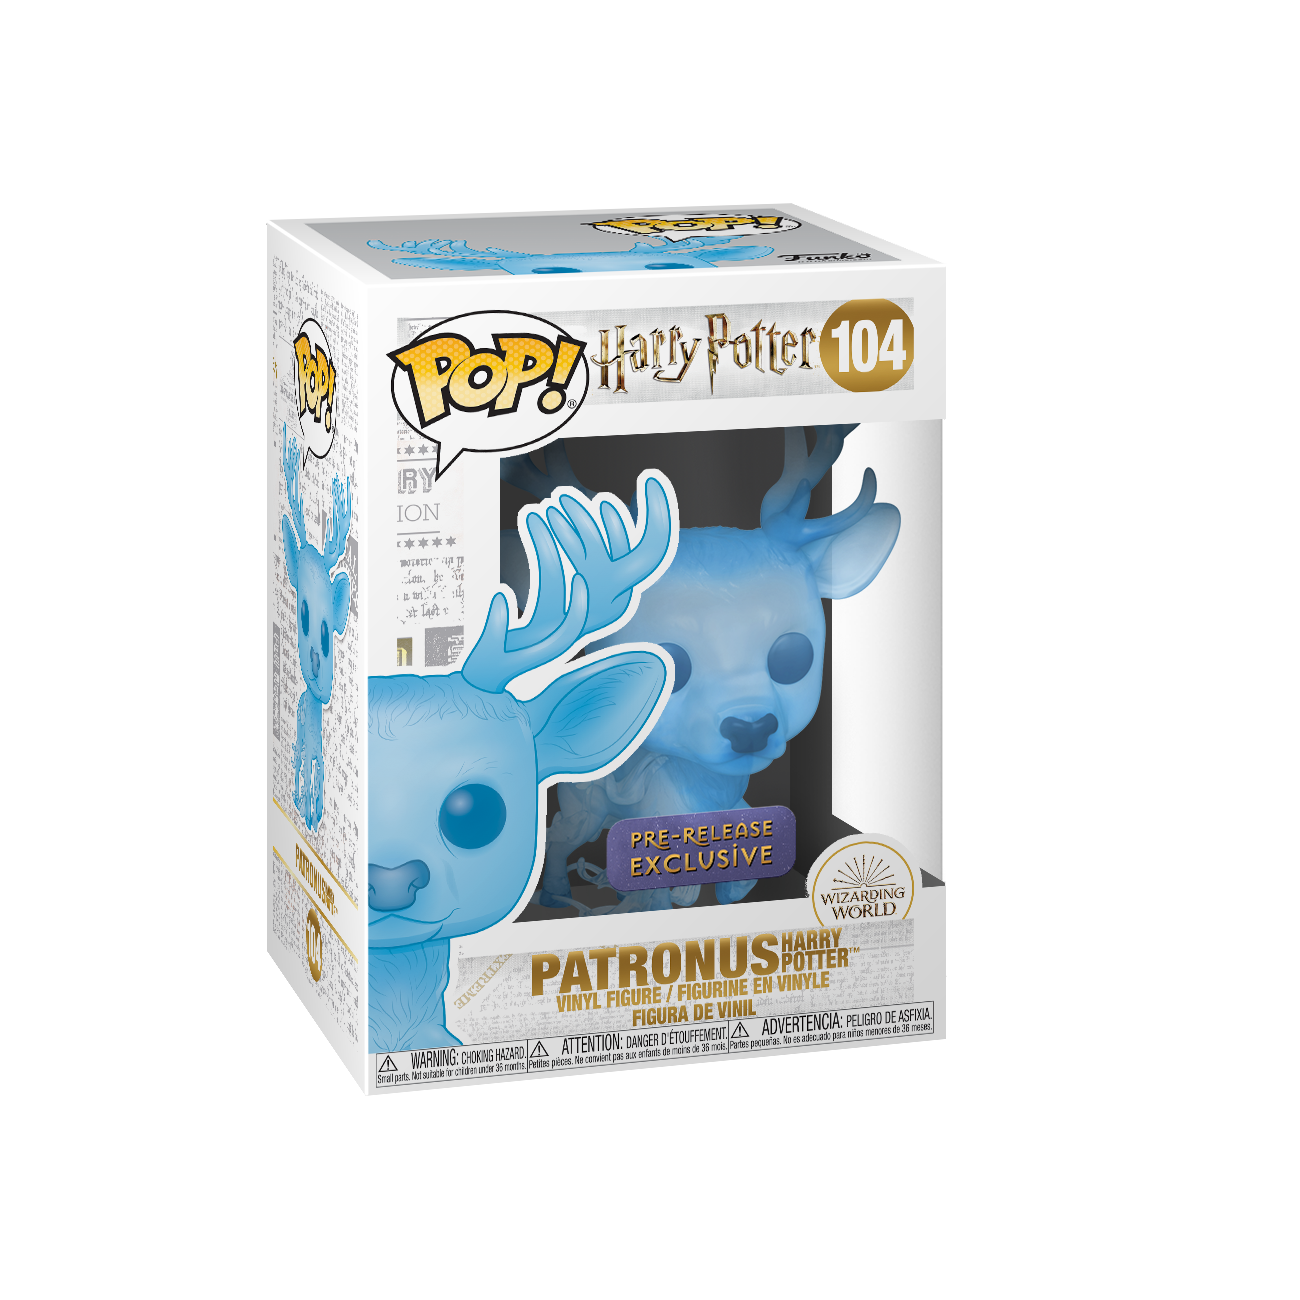 Punt Strikt voordelig New stag Patronus Funko Pop! figures on sale today | Wizarding World